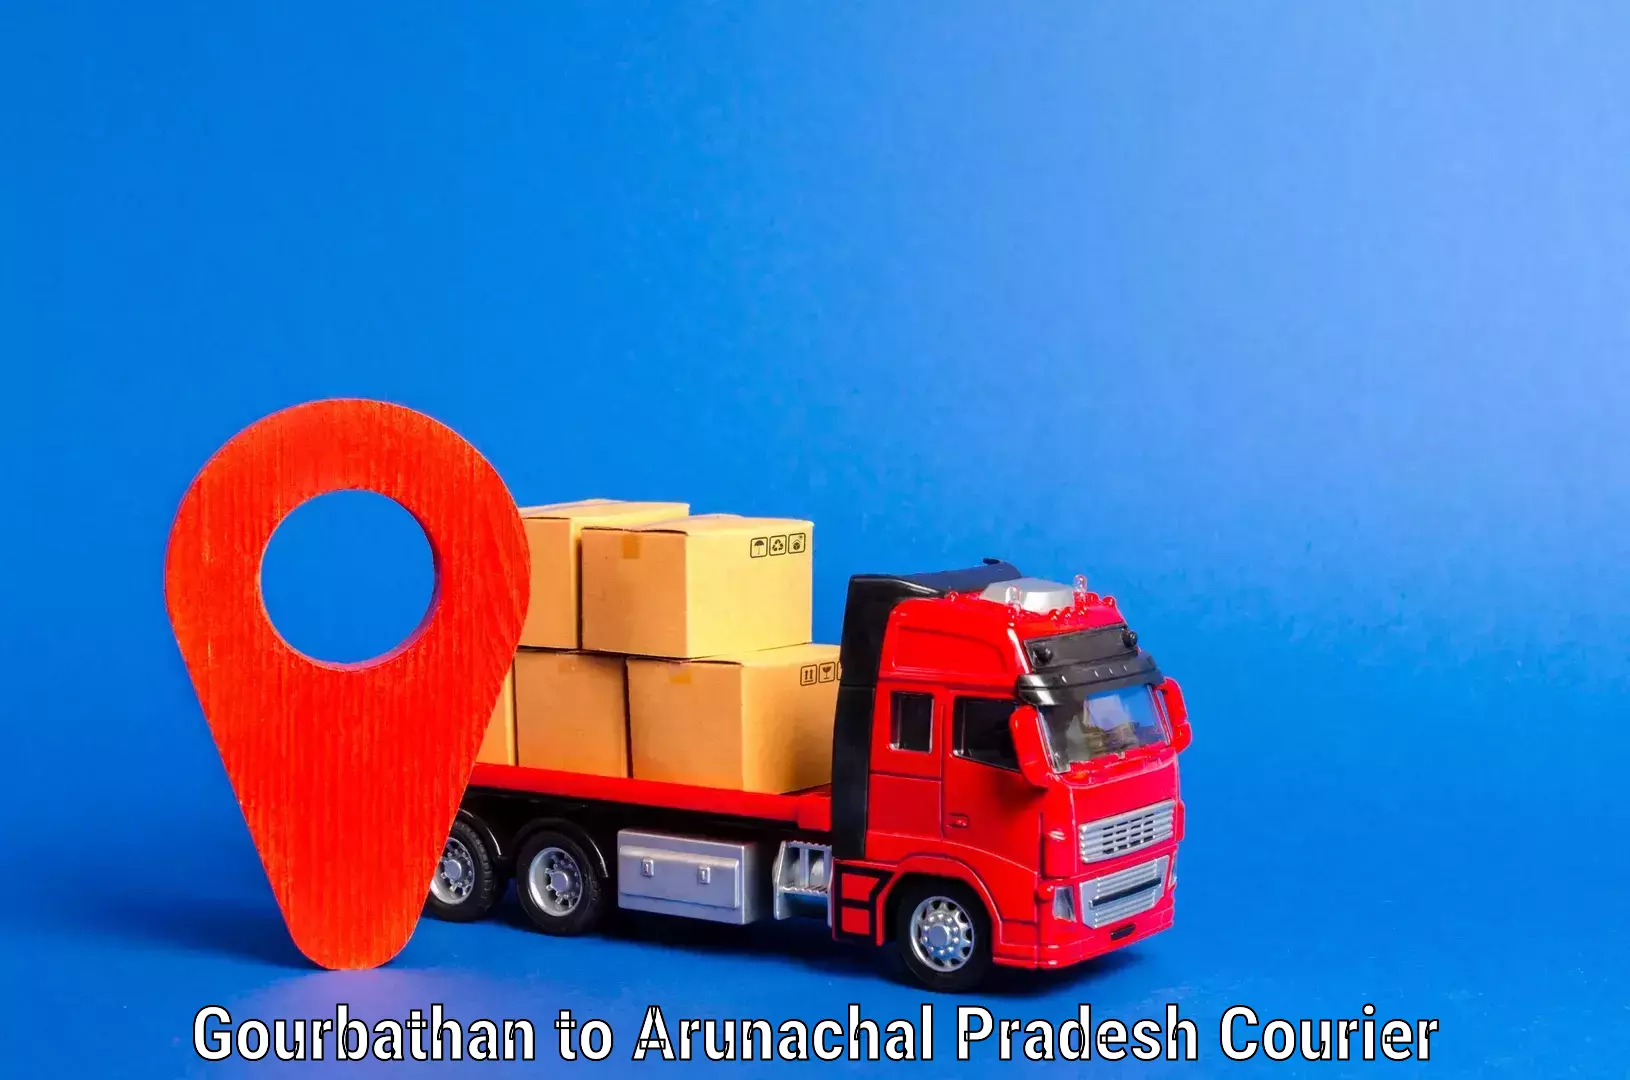 Furniture transport specialists Gourbathan to Arunachal Pradesh